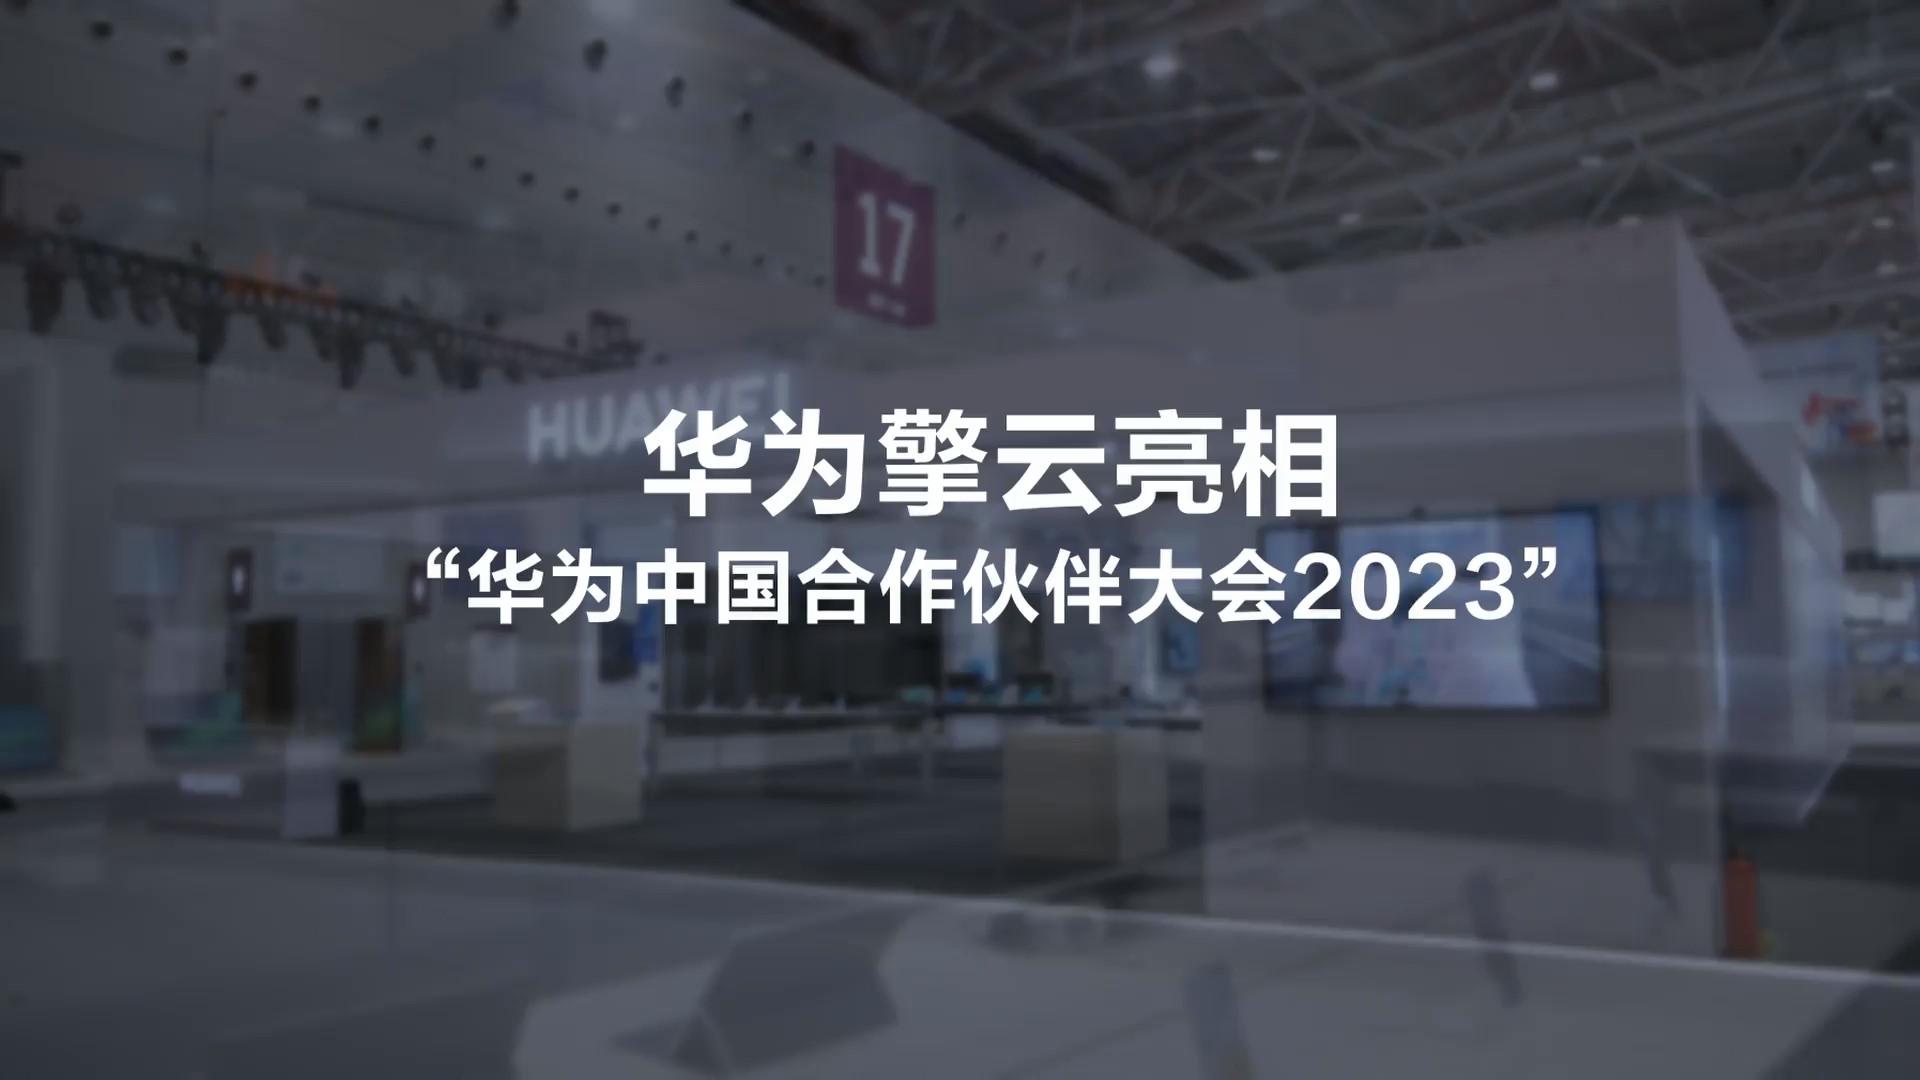 华为擎云亮相“华为中国合作伙伴大会2023